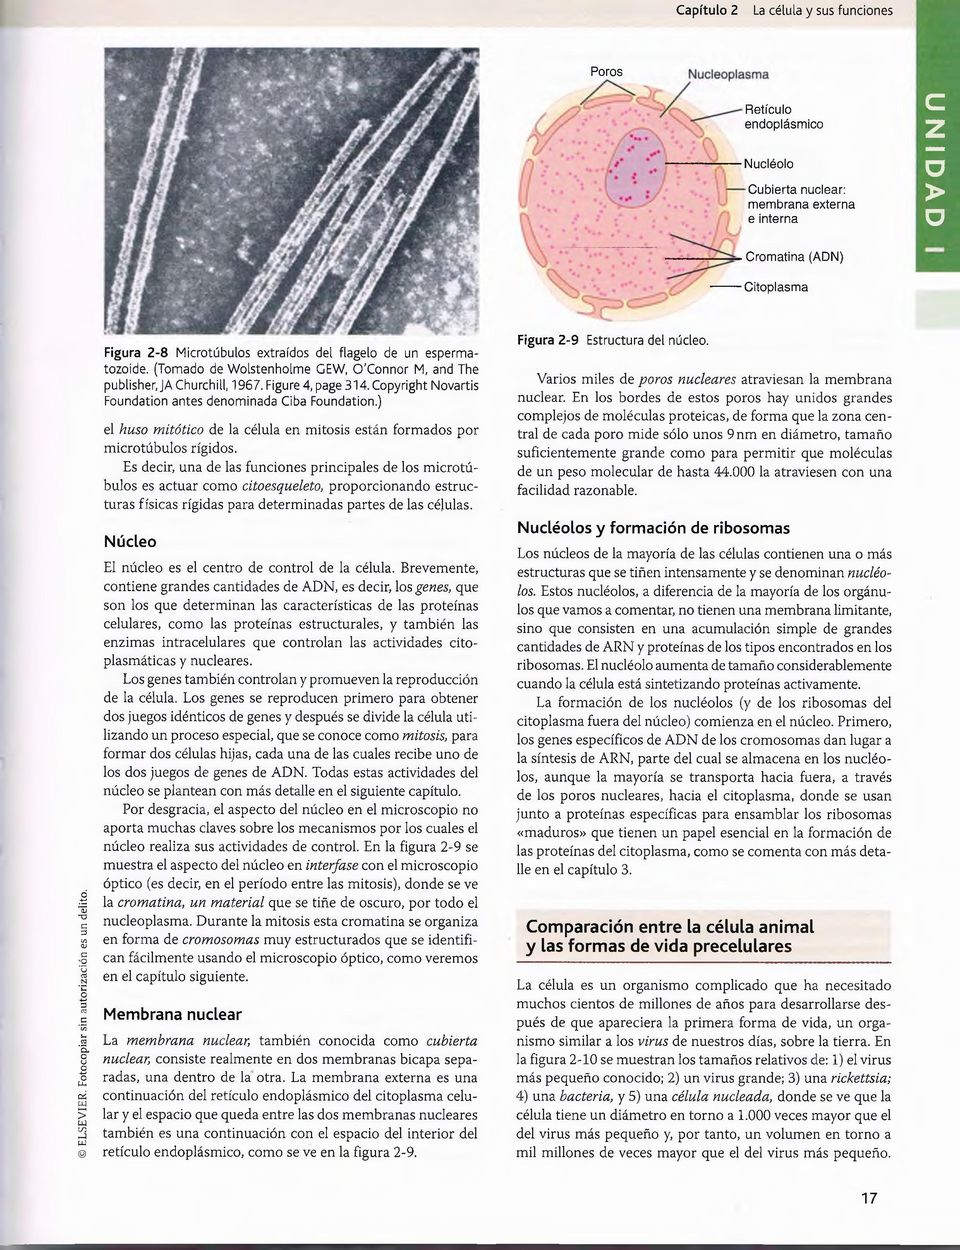 Figure 4, page 314. Copyright Novartis Foundation antes denominada Ciba Foundation.) el huso mitótico de la célula en mitosis están formados por microtúbulos rígidos.